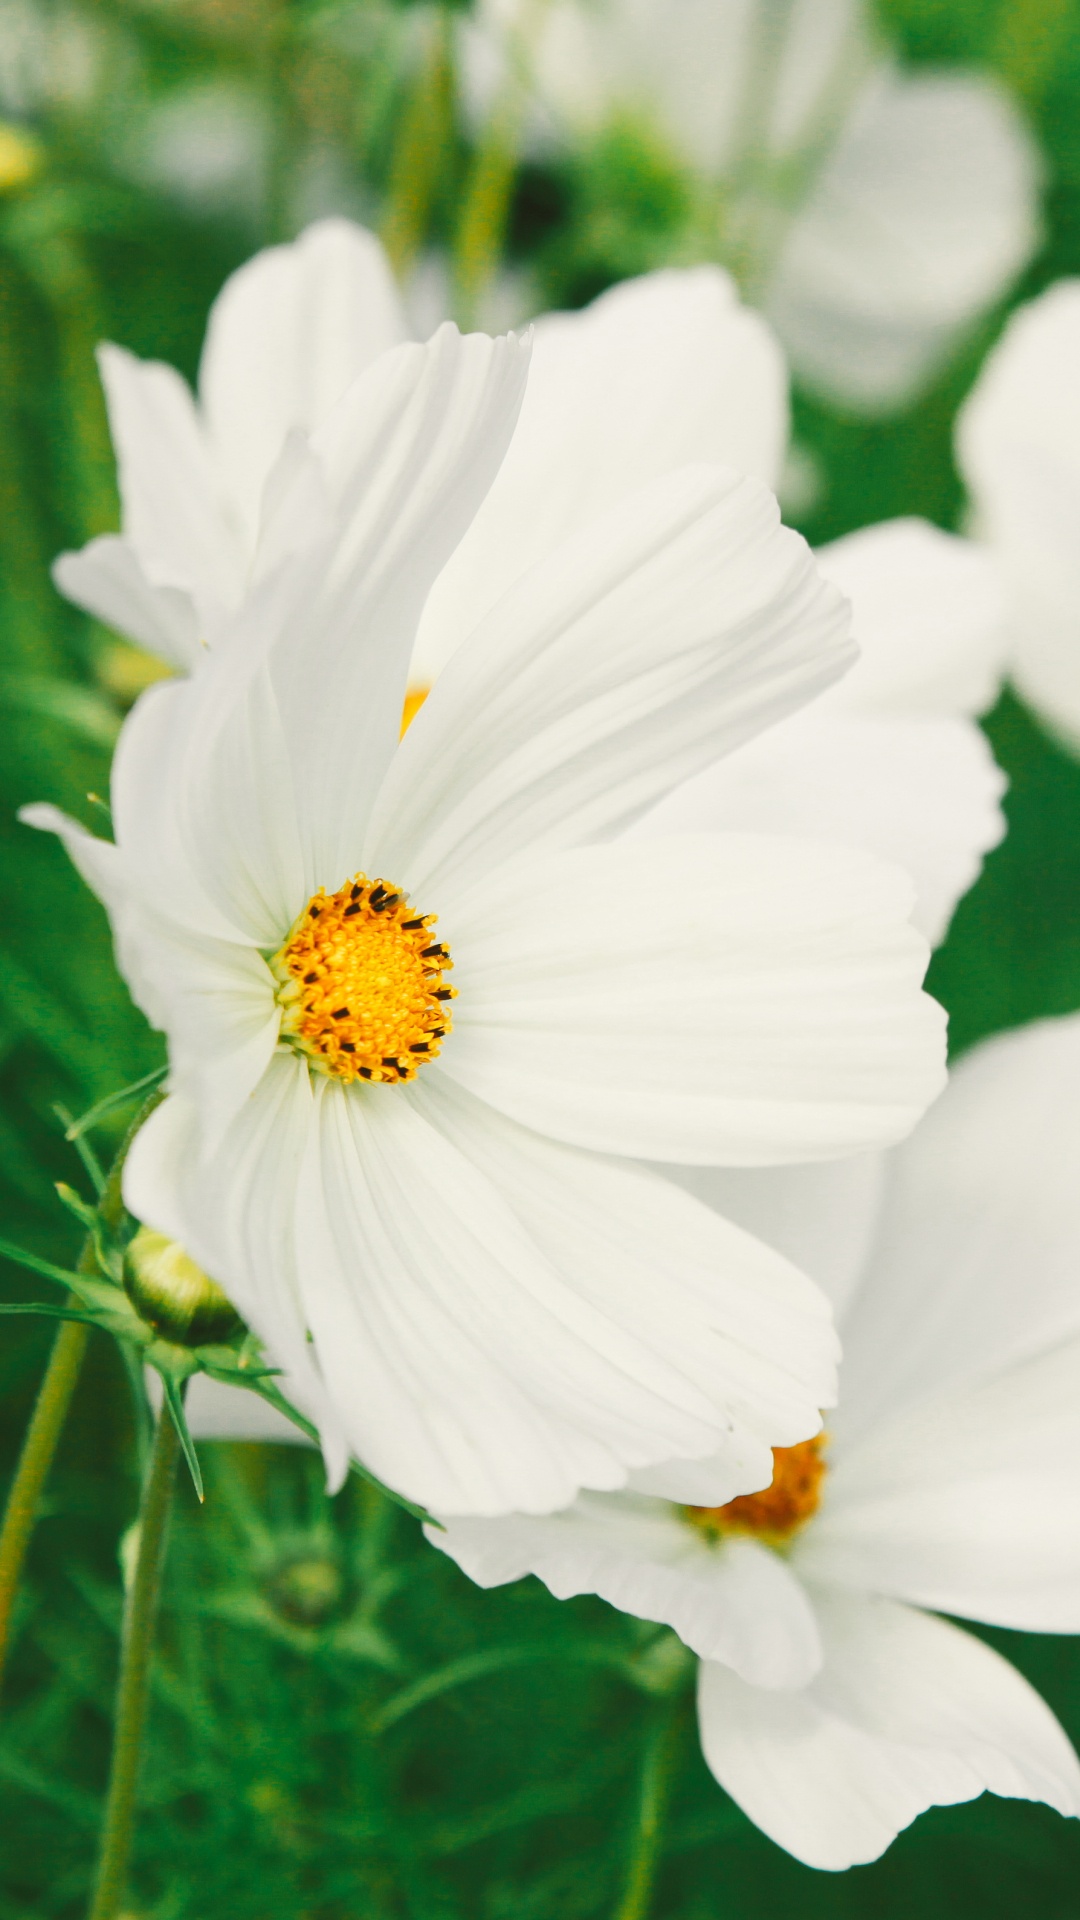 White Flowers in Tilt Shift Lens. Wallpaper in 1080x1920 Resolution